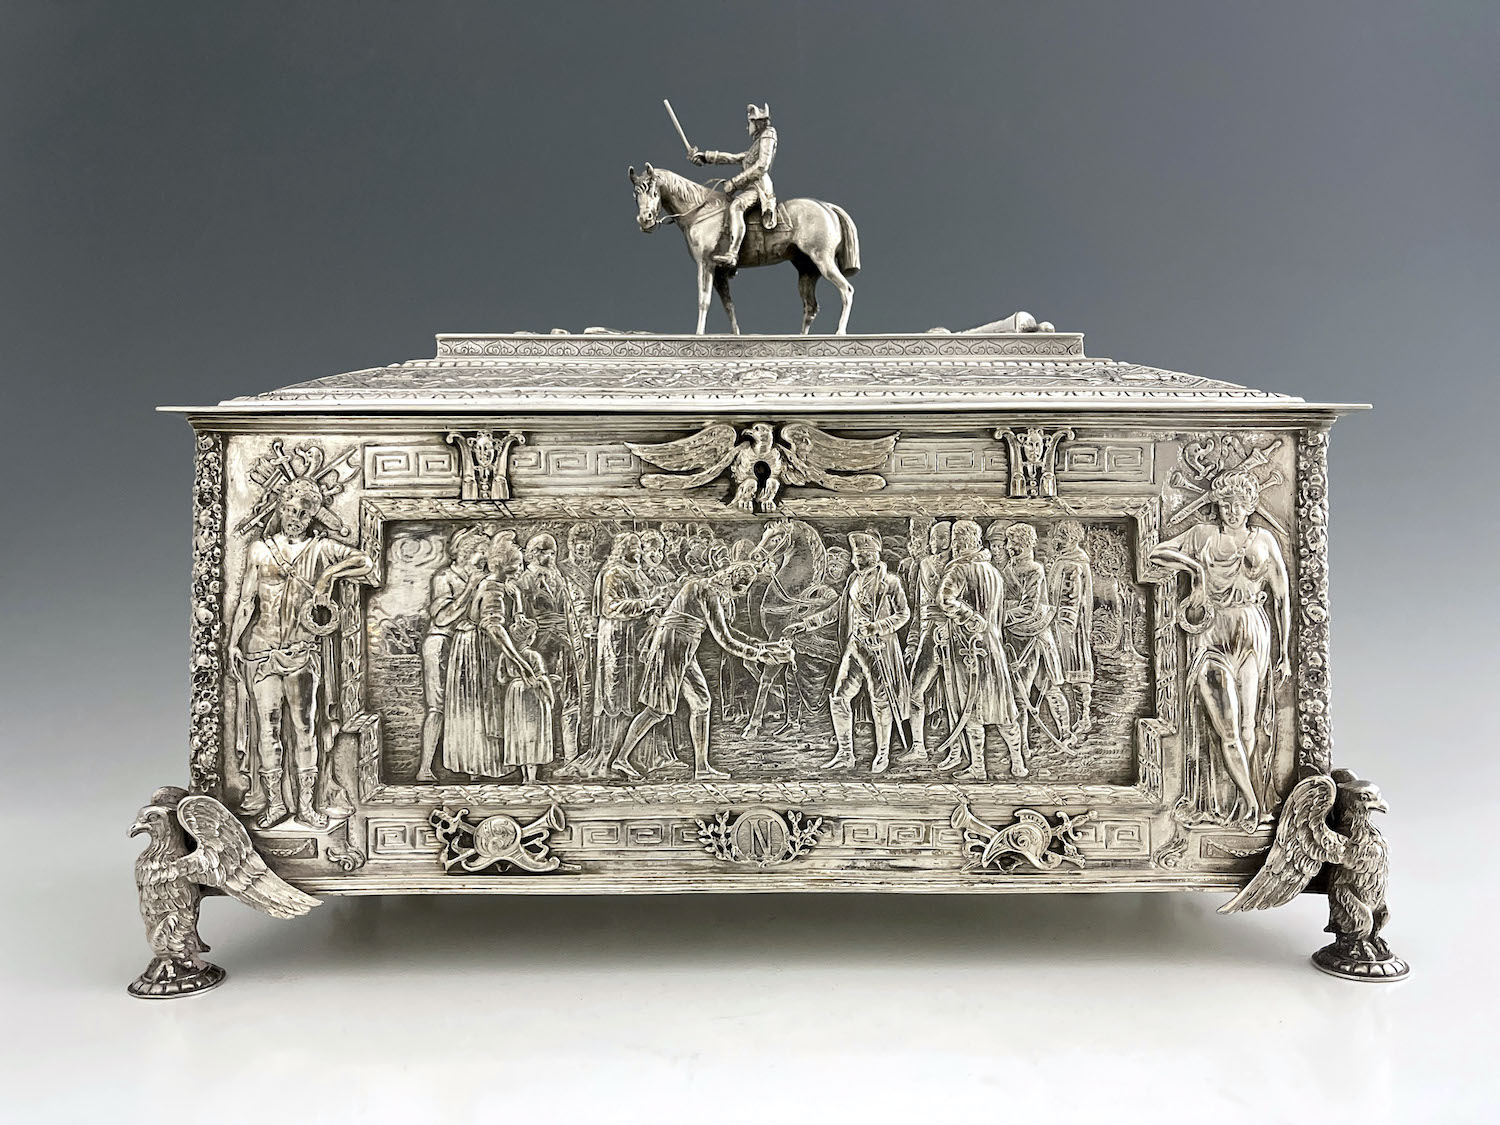 A silver casket commemorating the Triumph of Napoleon